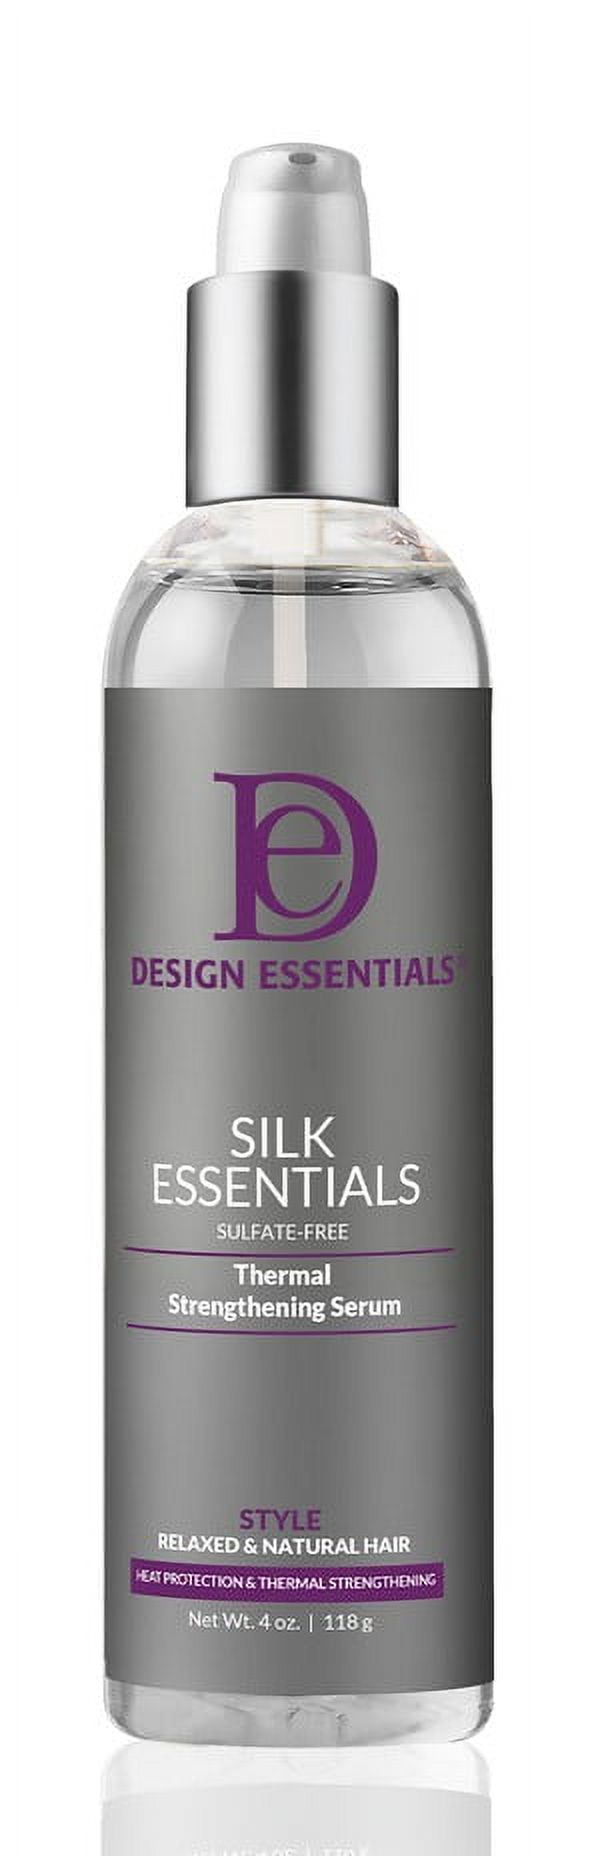 Design Essentials Silk Essentials Thermal Strengthening Serum - 4 oz